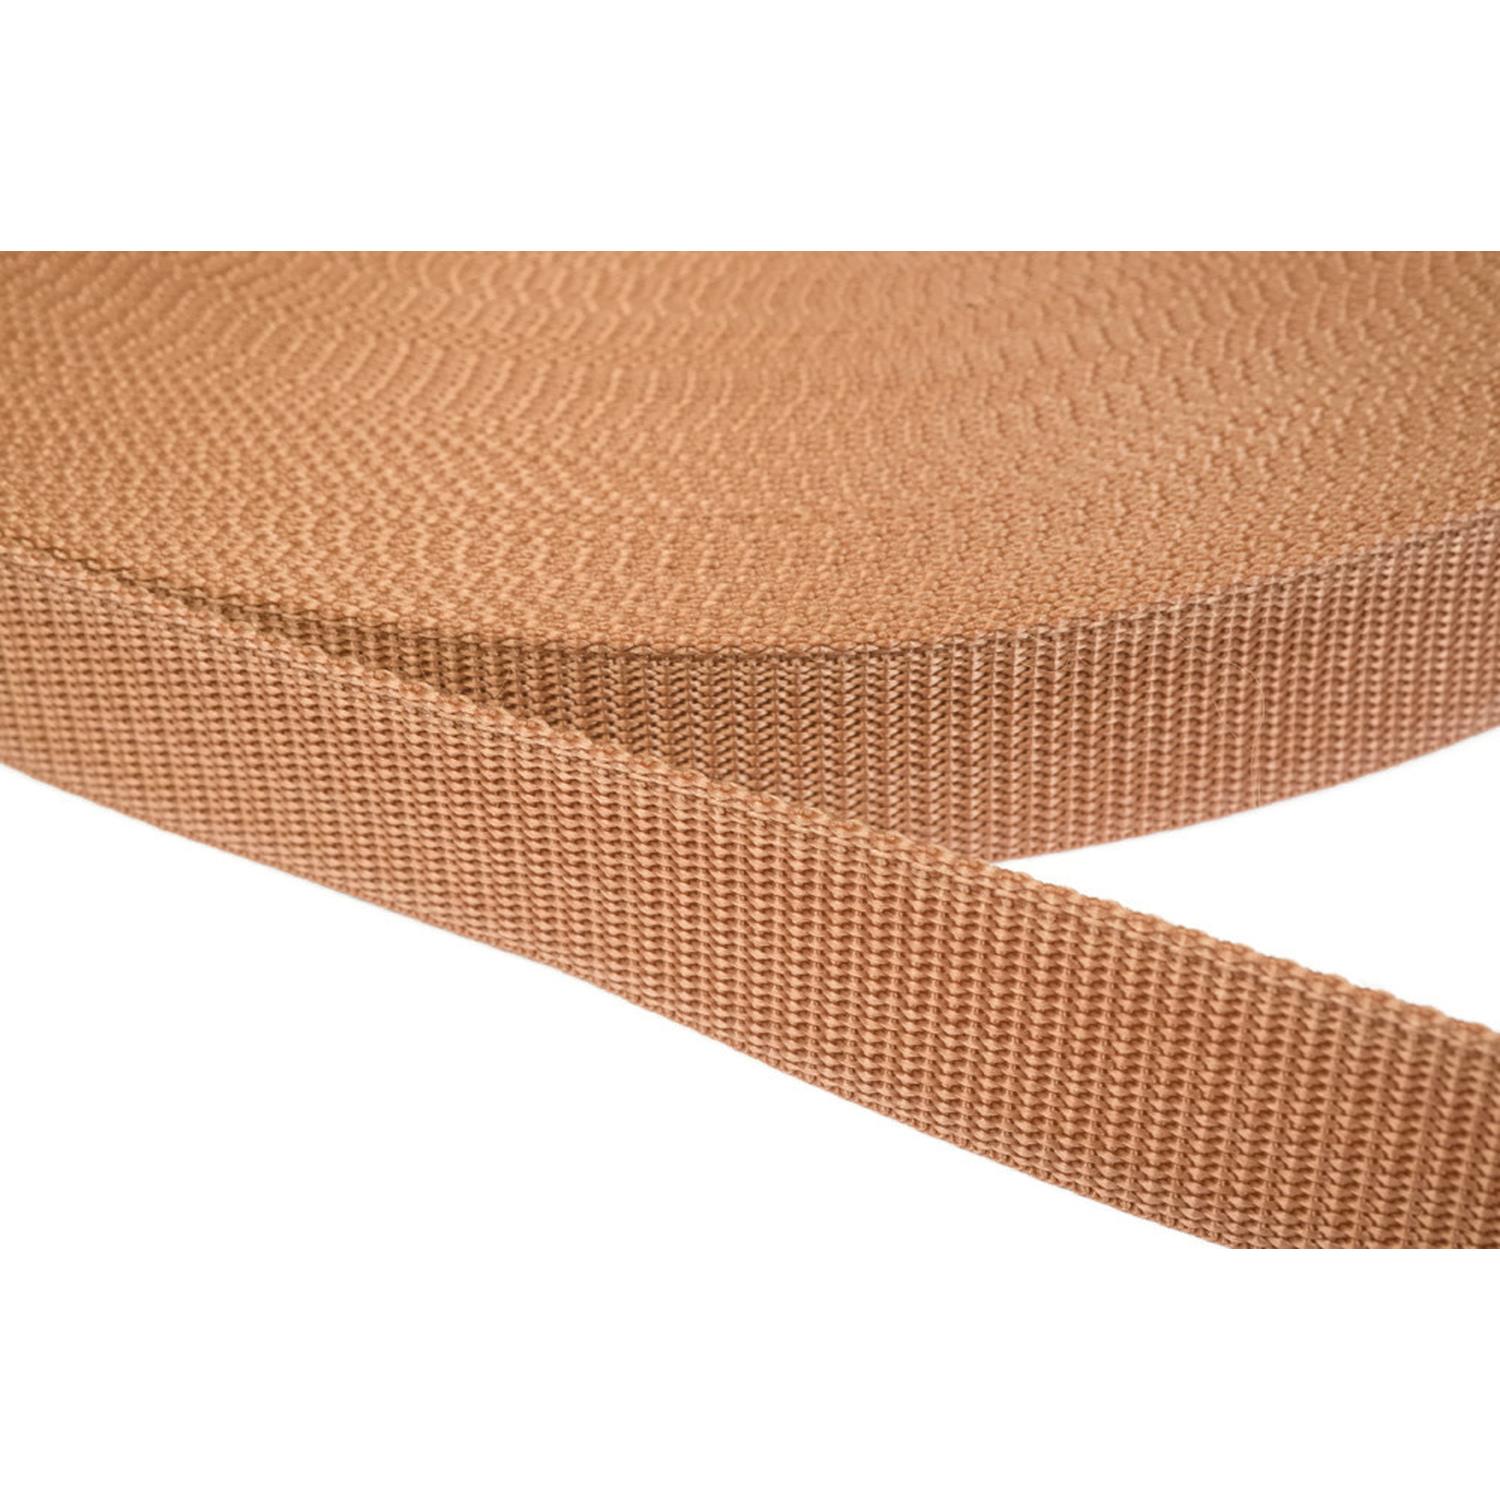 Gurtband 25mm breit aus Polypropylen in 41 Farben 06 - hellbraun 6 Meter